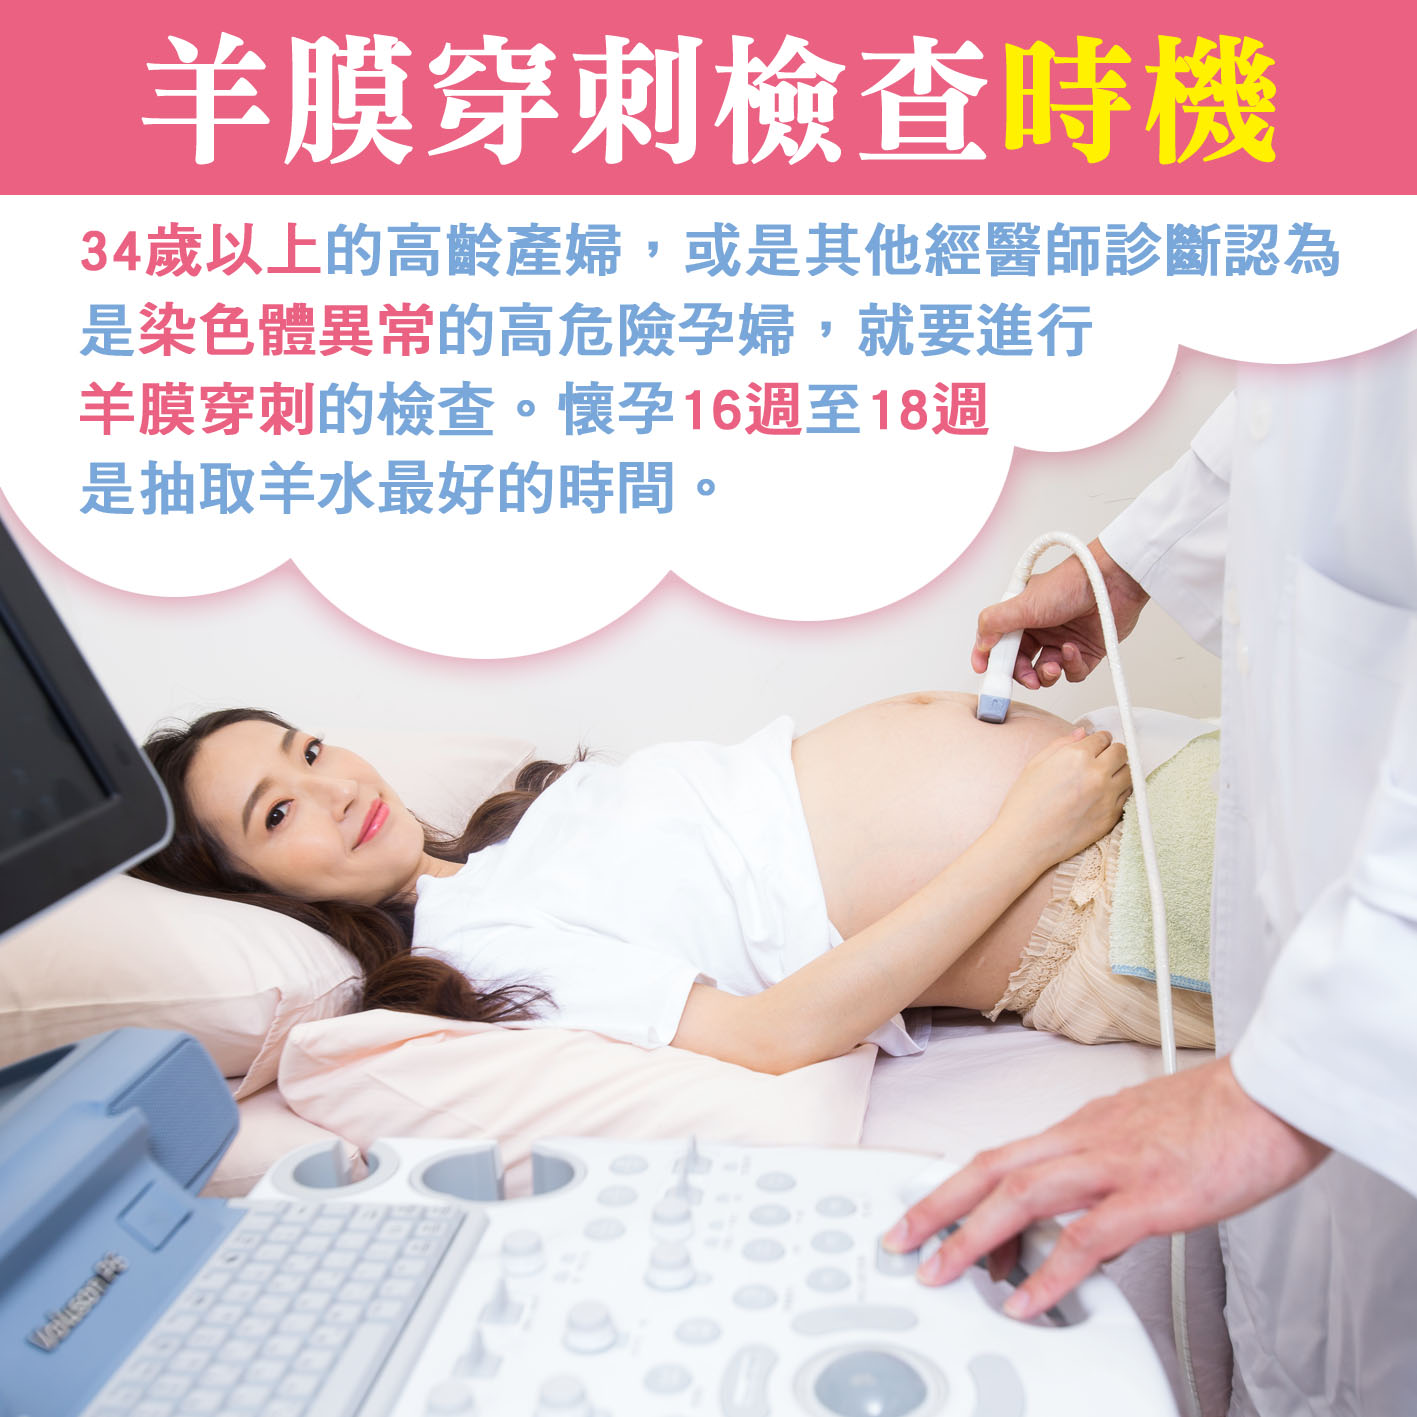 懷孕第17週: 羊膜穿刺檢查時機.jpg